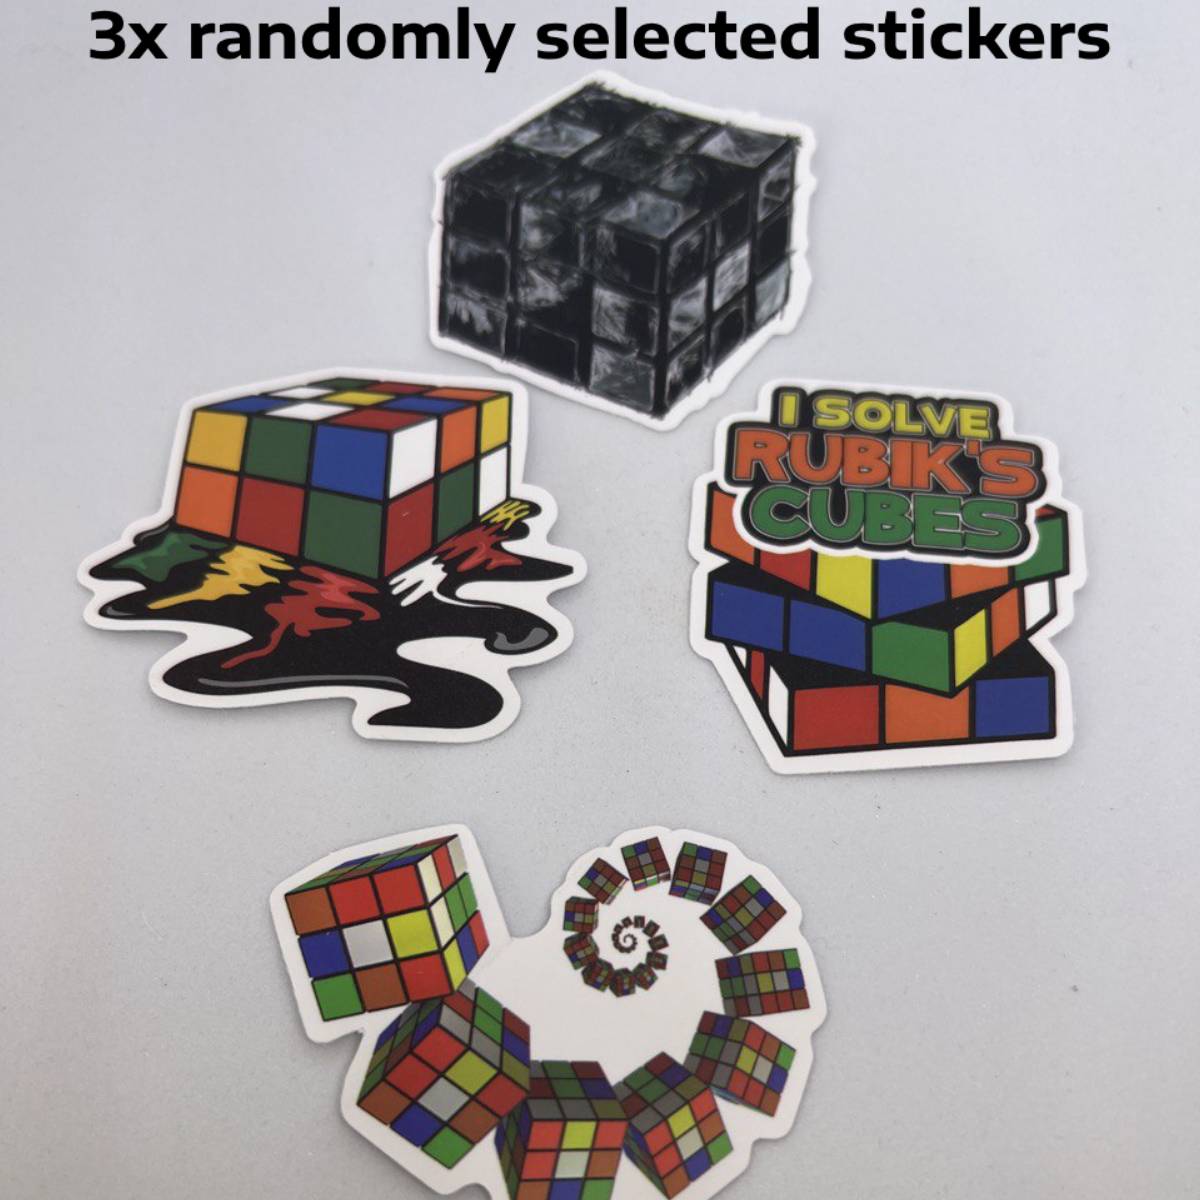 MoYu Magnetic rubik's Cube Gift Set - 3x3